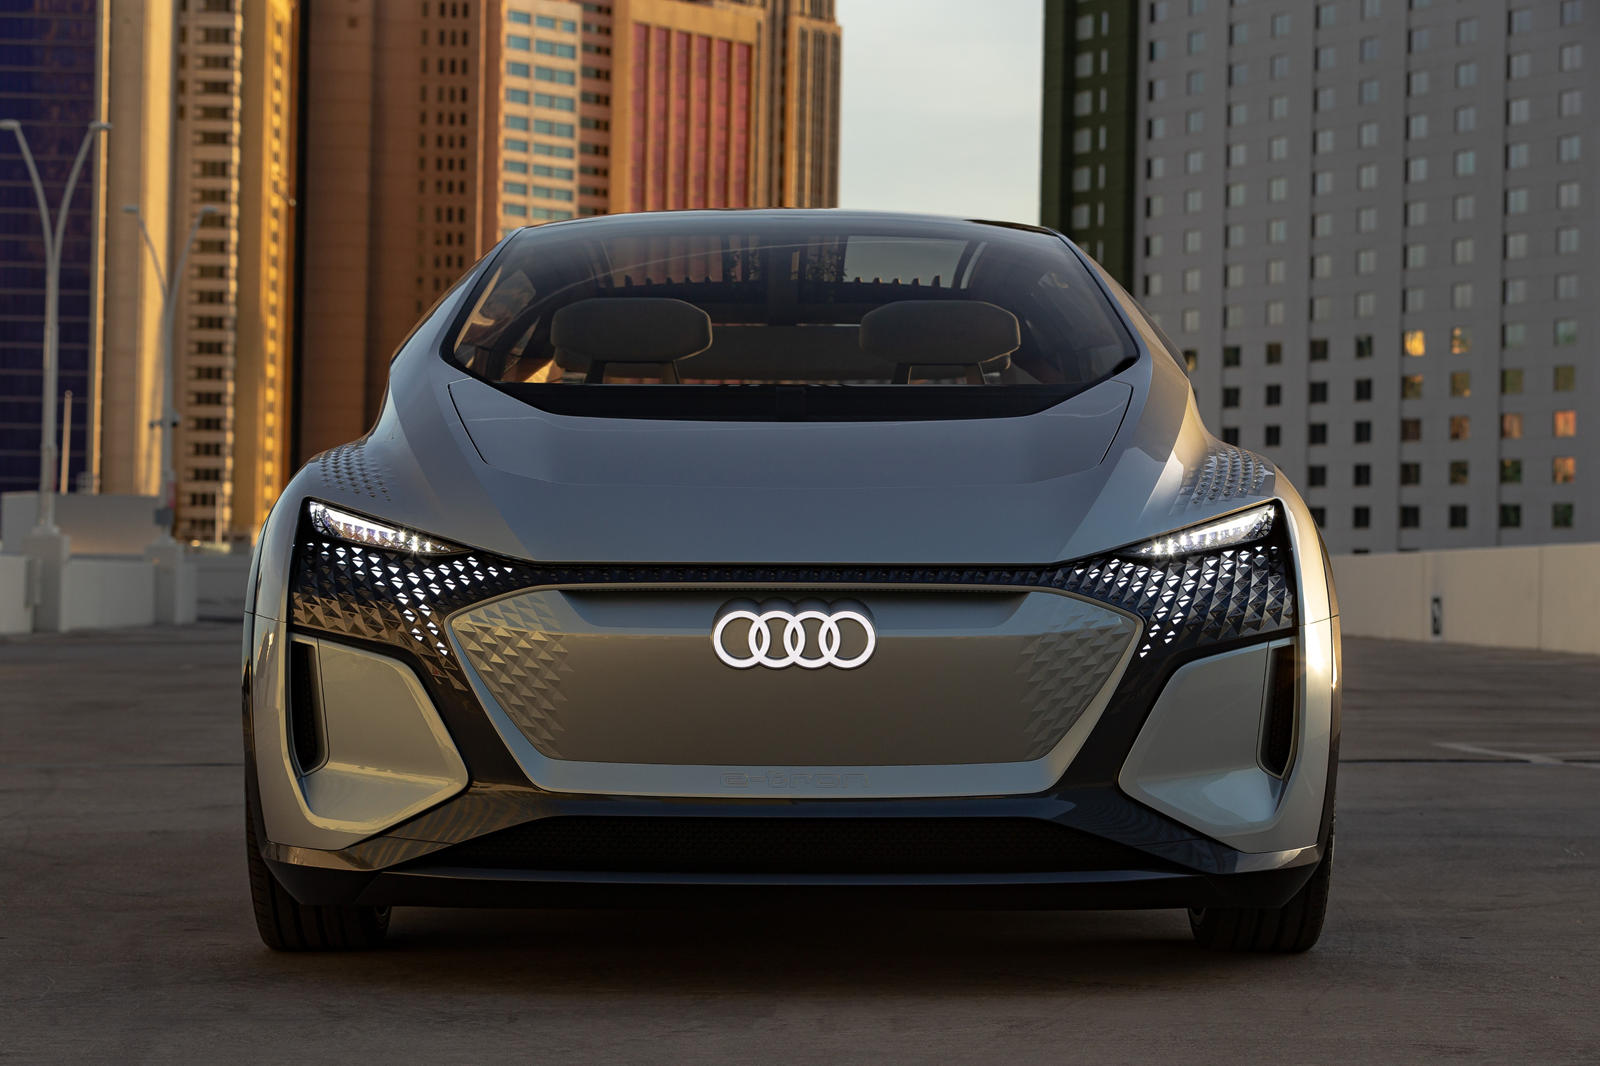 Audi A2 Will Be Reborn As Futuristic Electric City Car